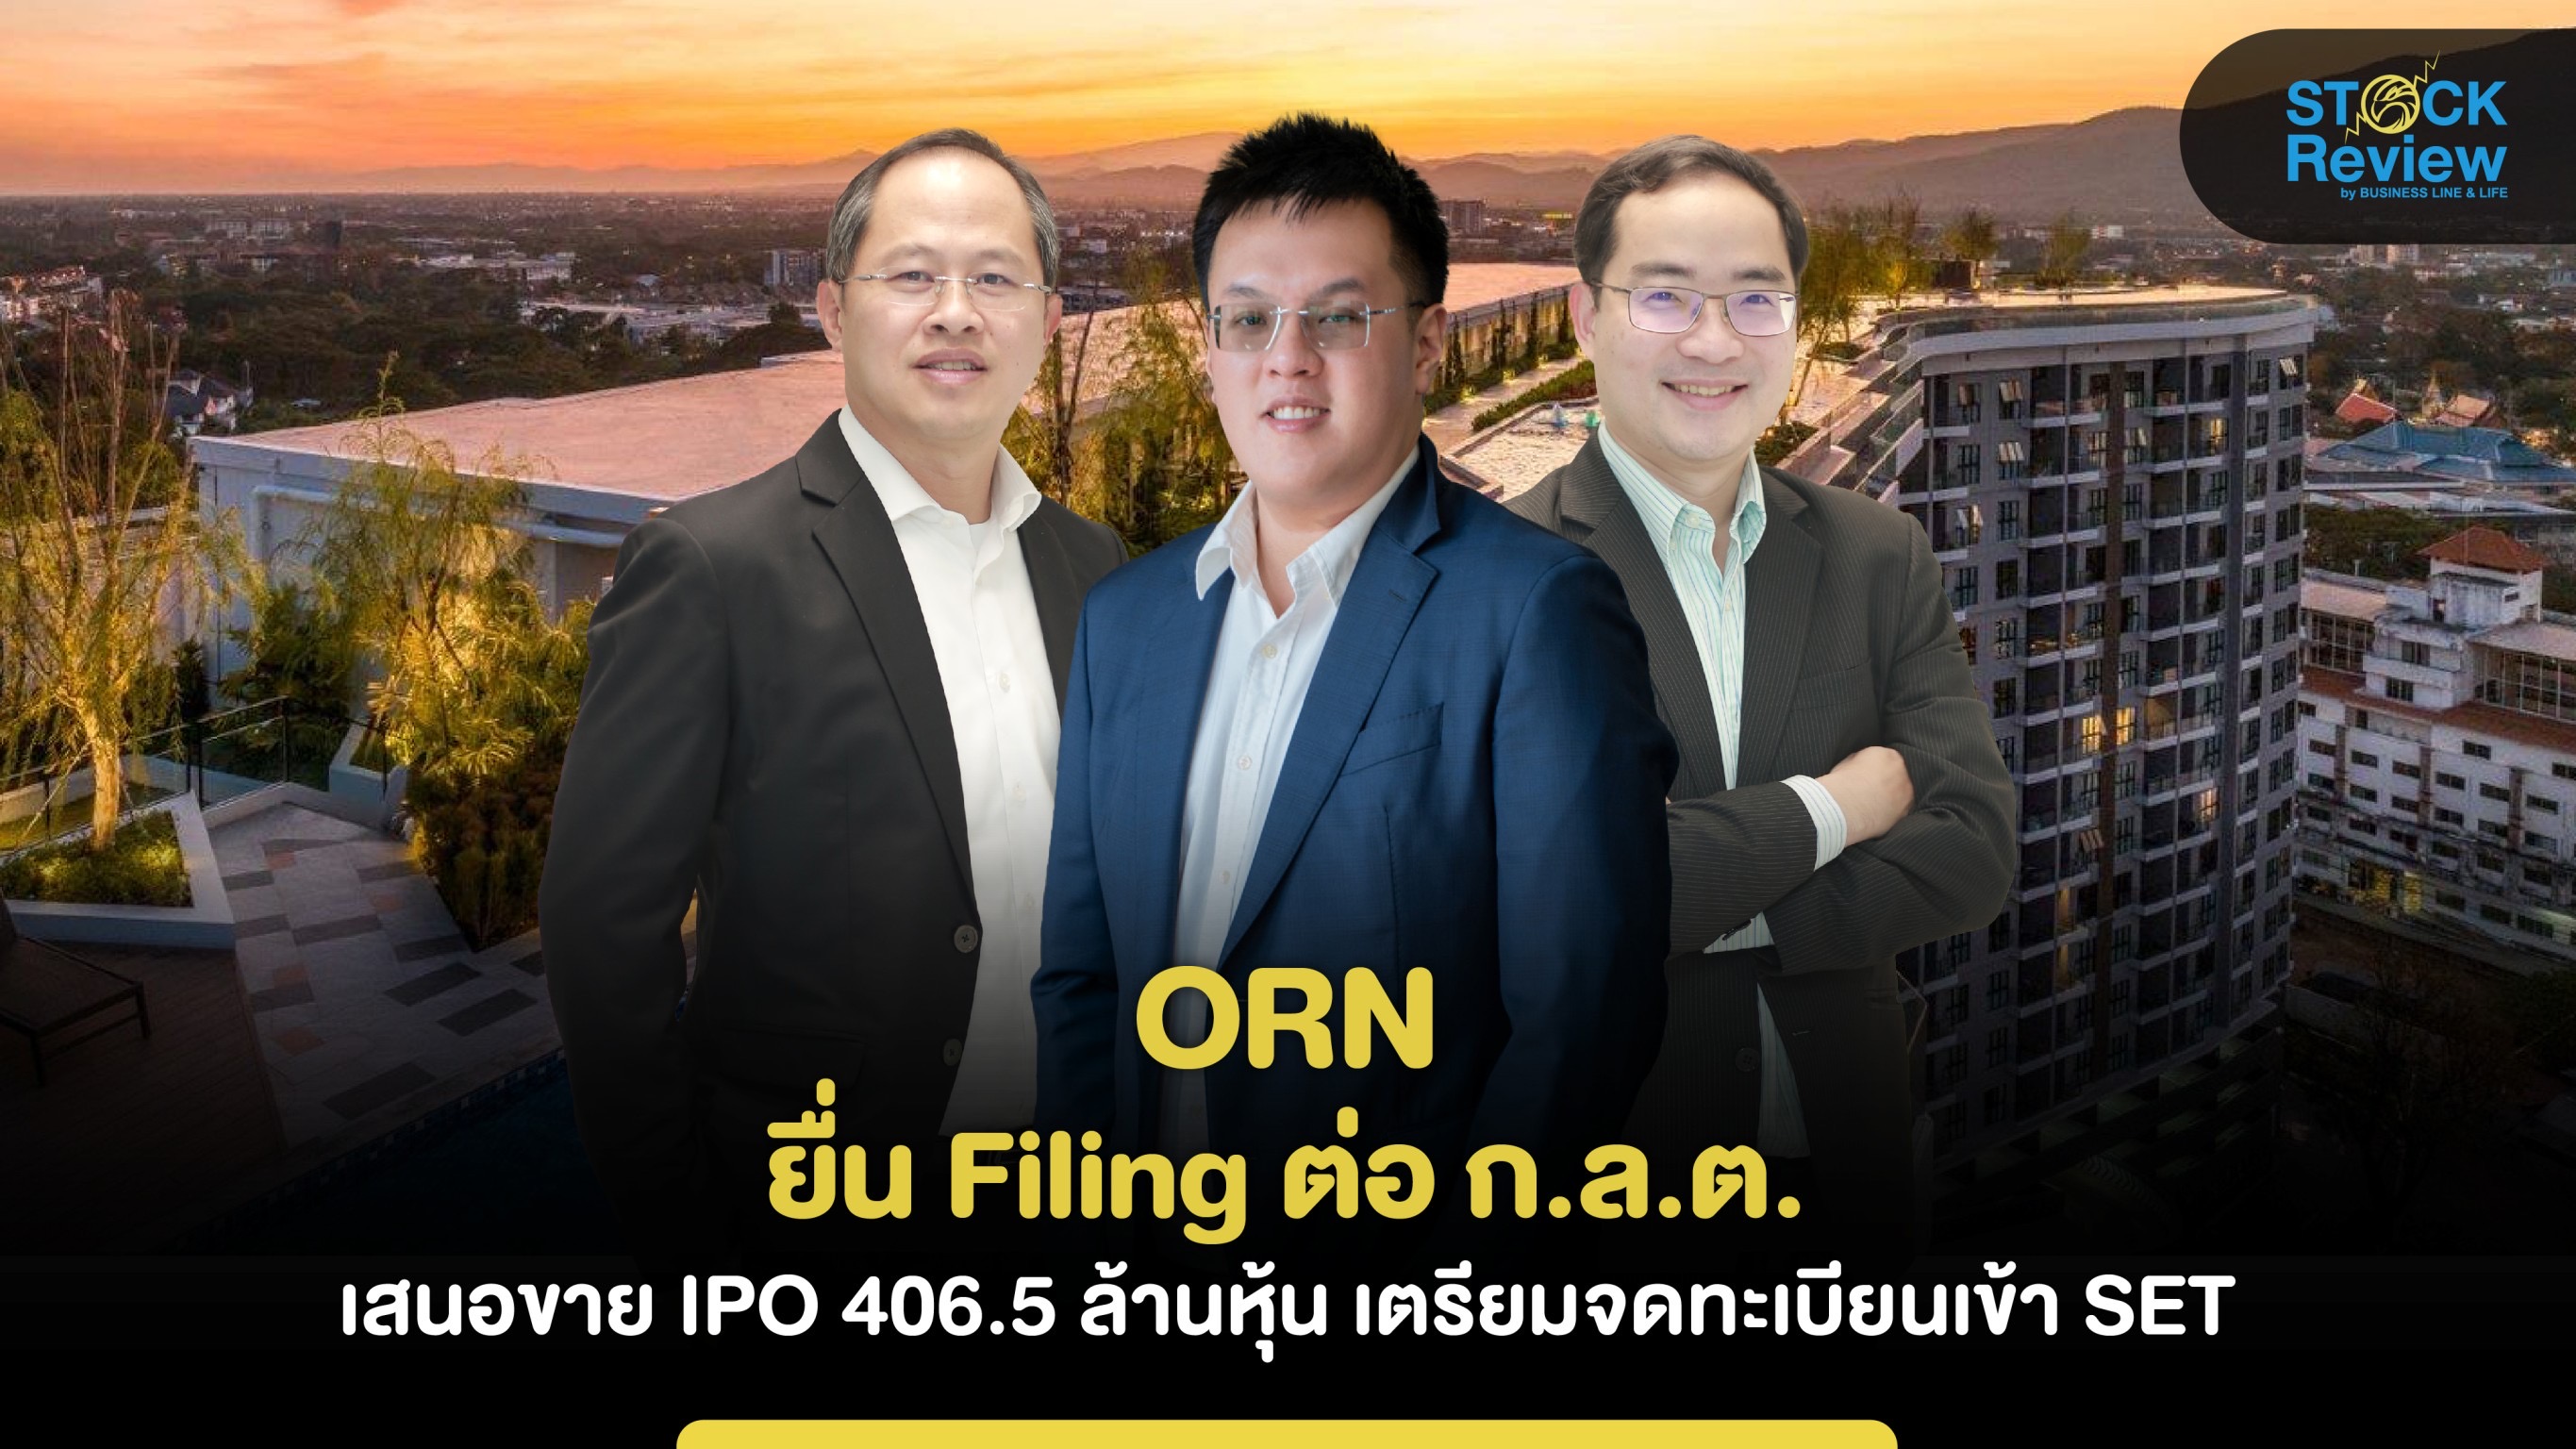 ORN  ยื่น Filing ต่อ ก.ล.ต. เสนอขาย IPO 406.5 ล้านหุ้น